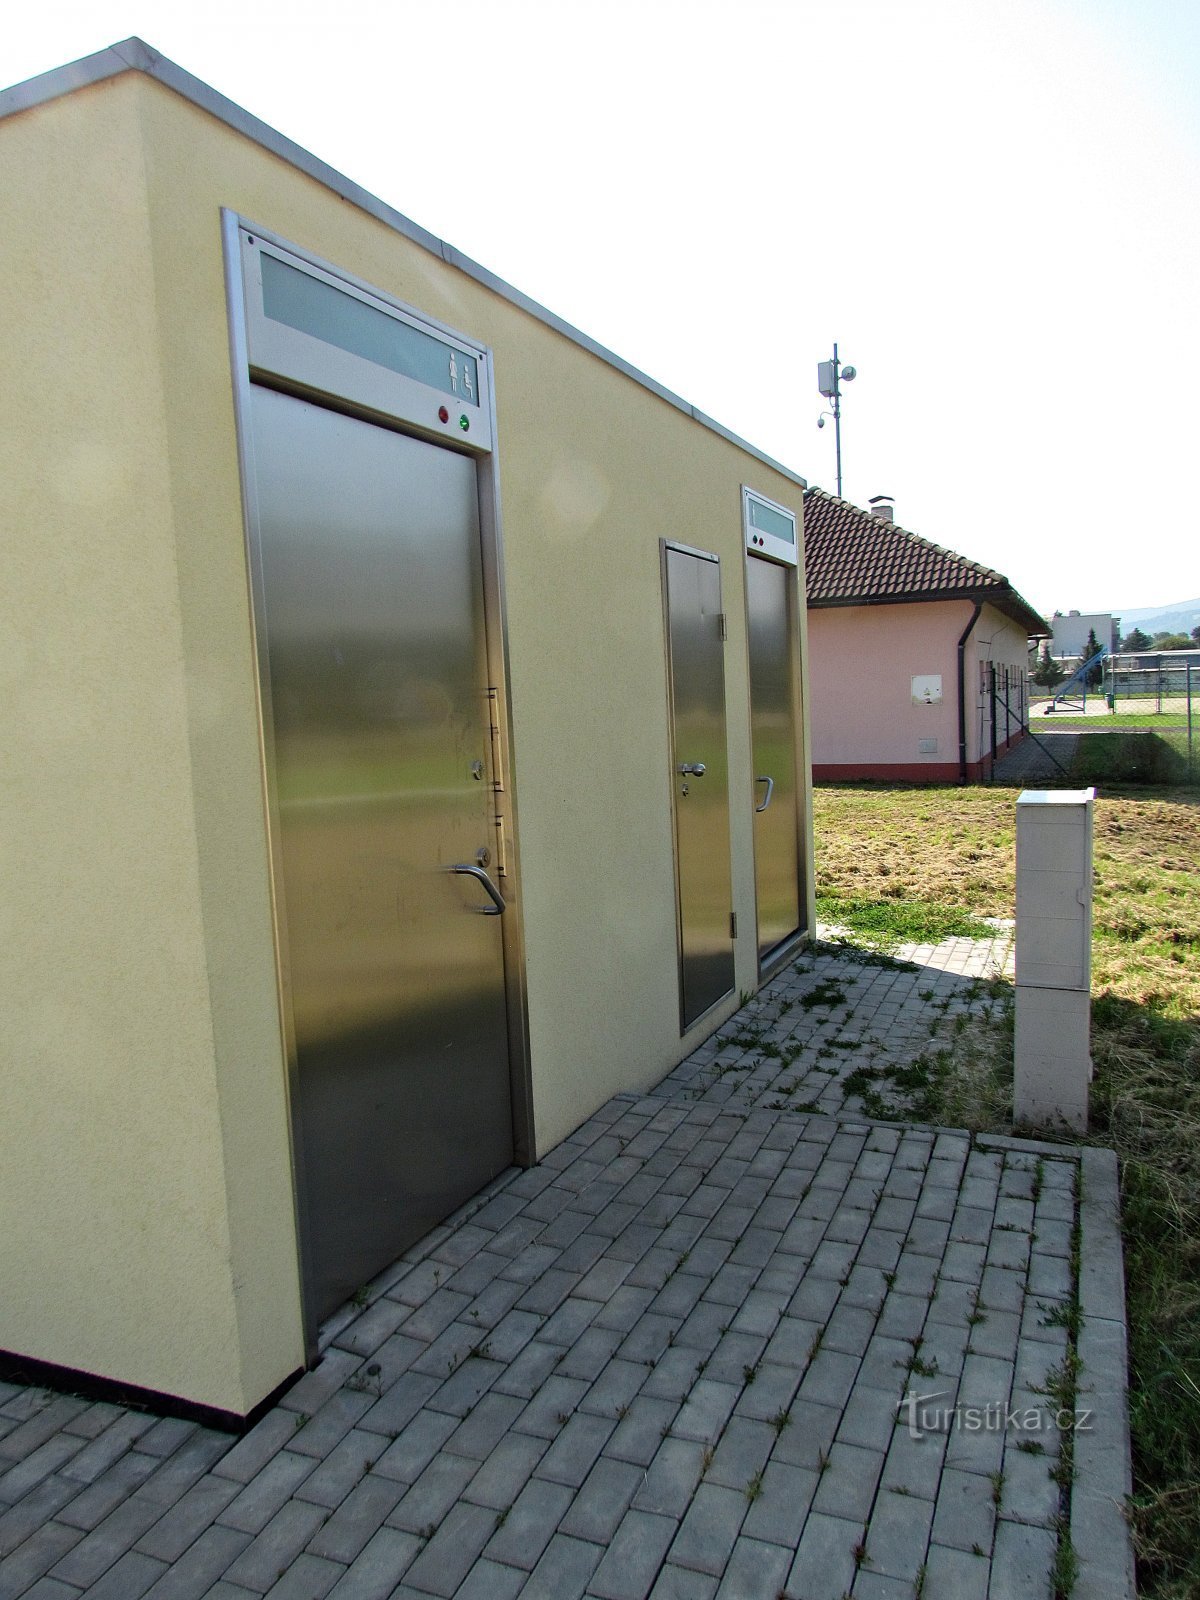 Nieuw openbaar toilet Brumov